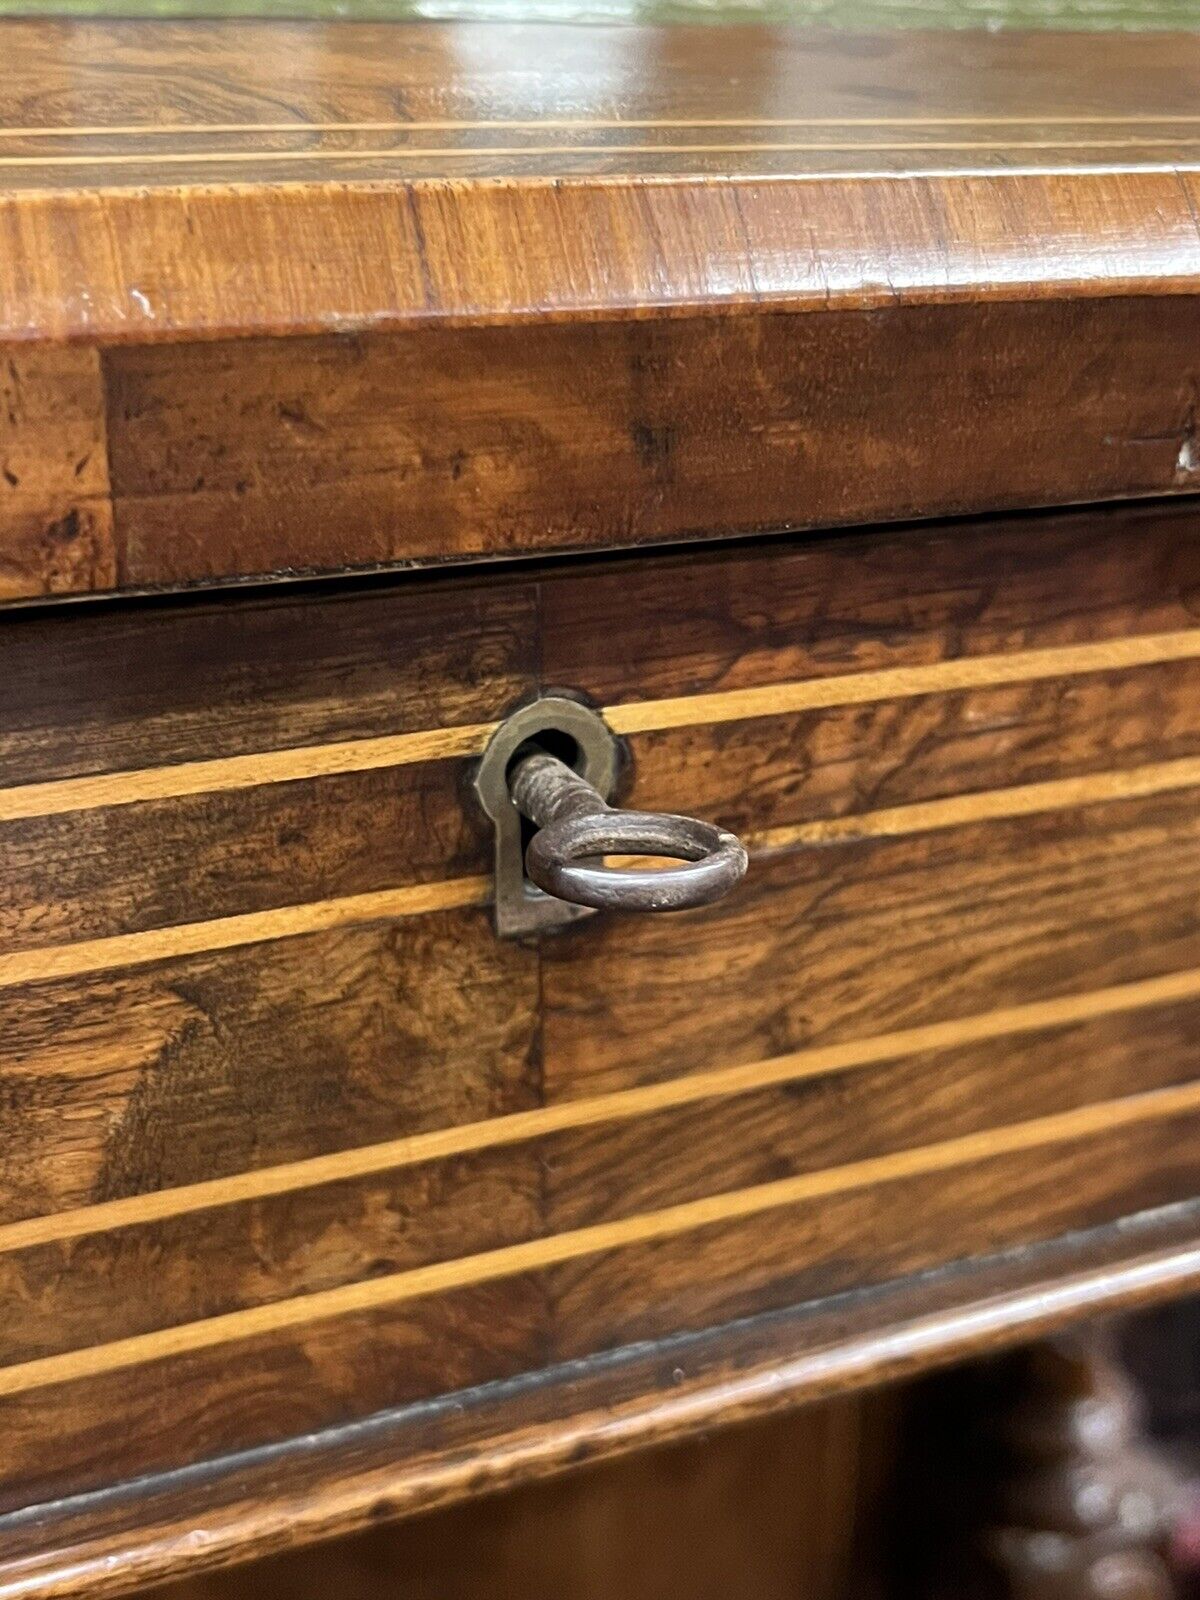 Victorian Walnut Davenport Desk. Loads Of Storage.